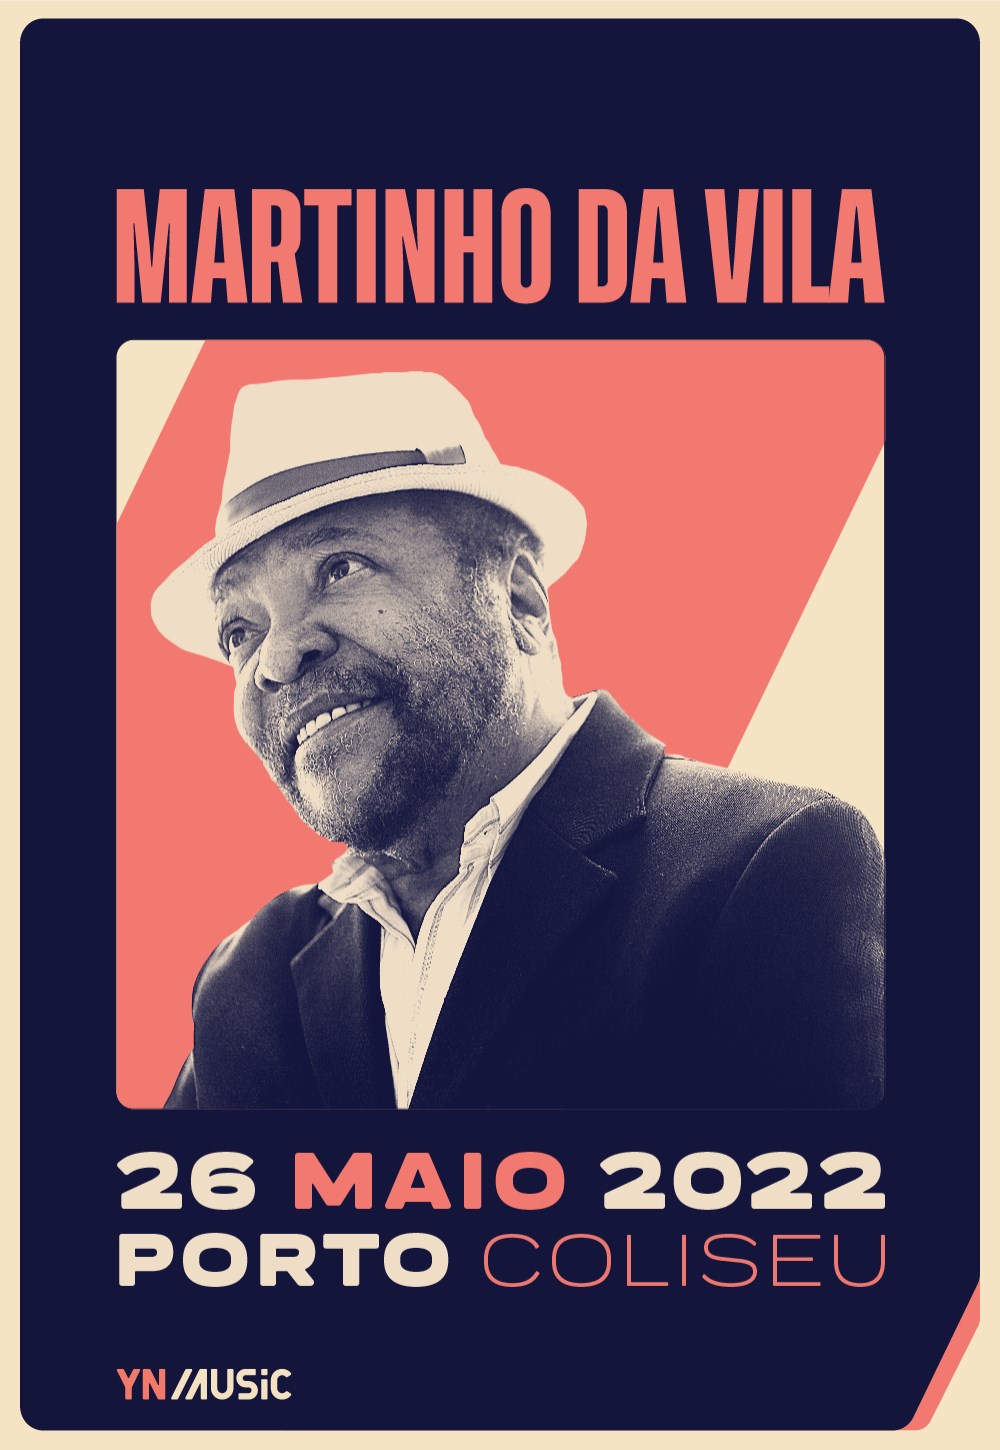 Martinho da Vila apresenta hoje espetáculo no Coliseu do Porto